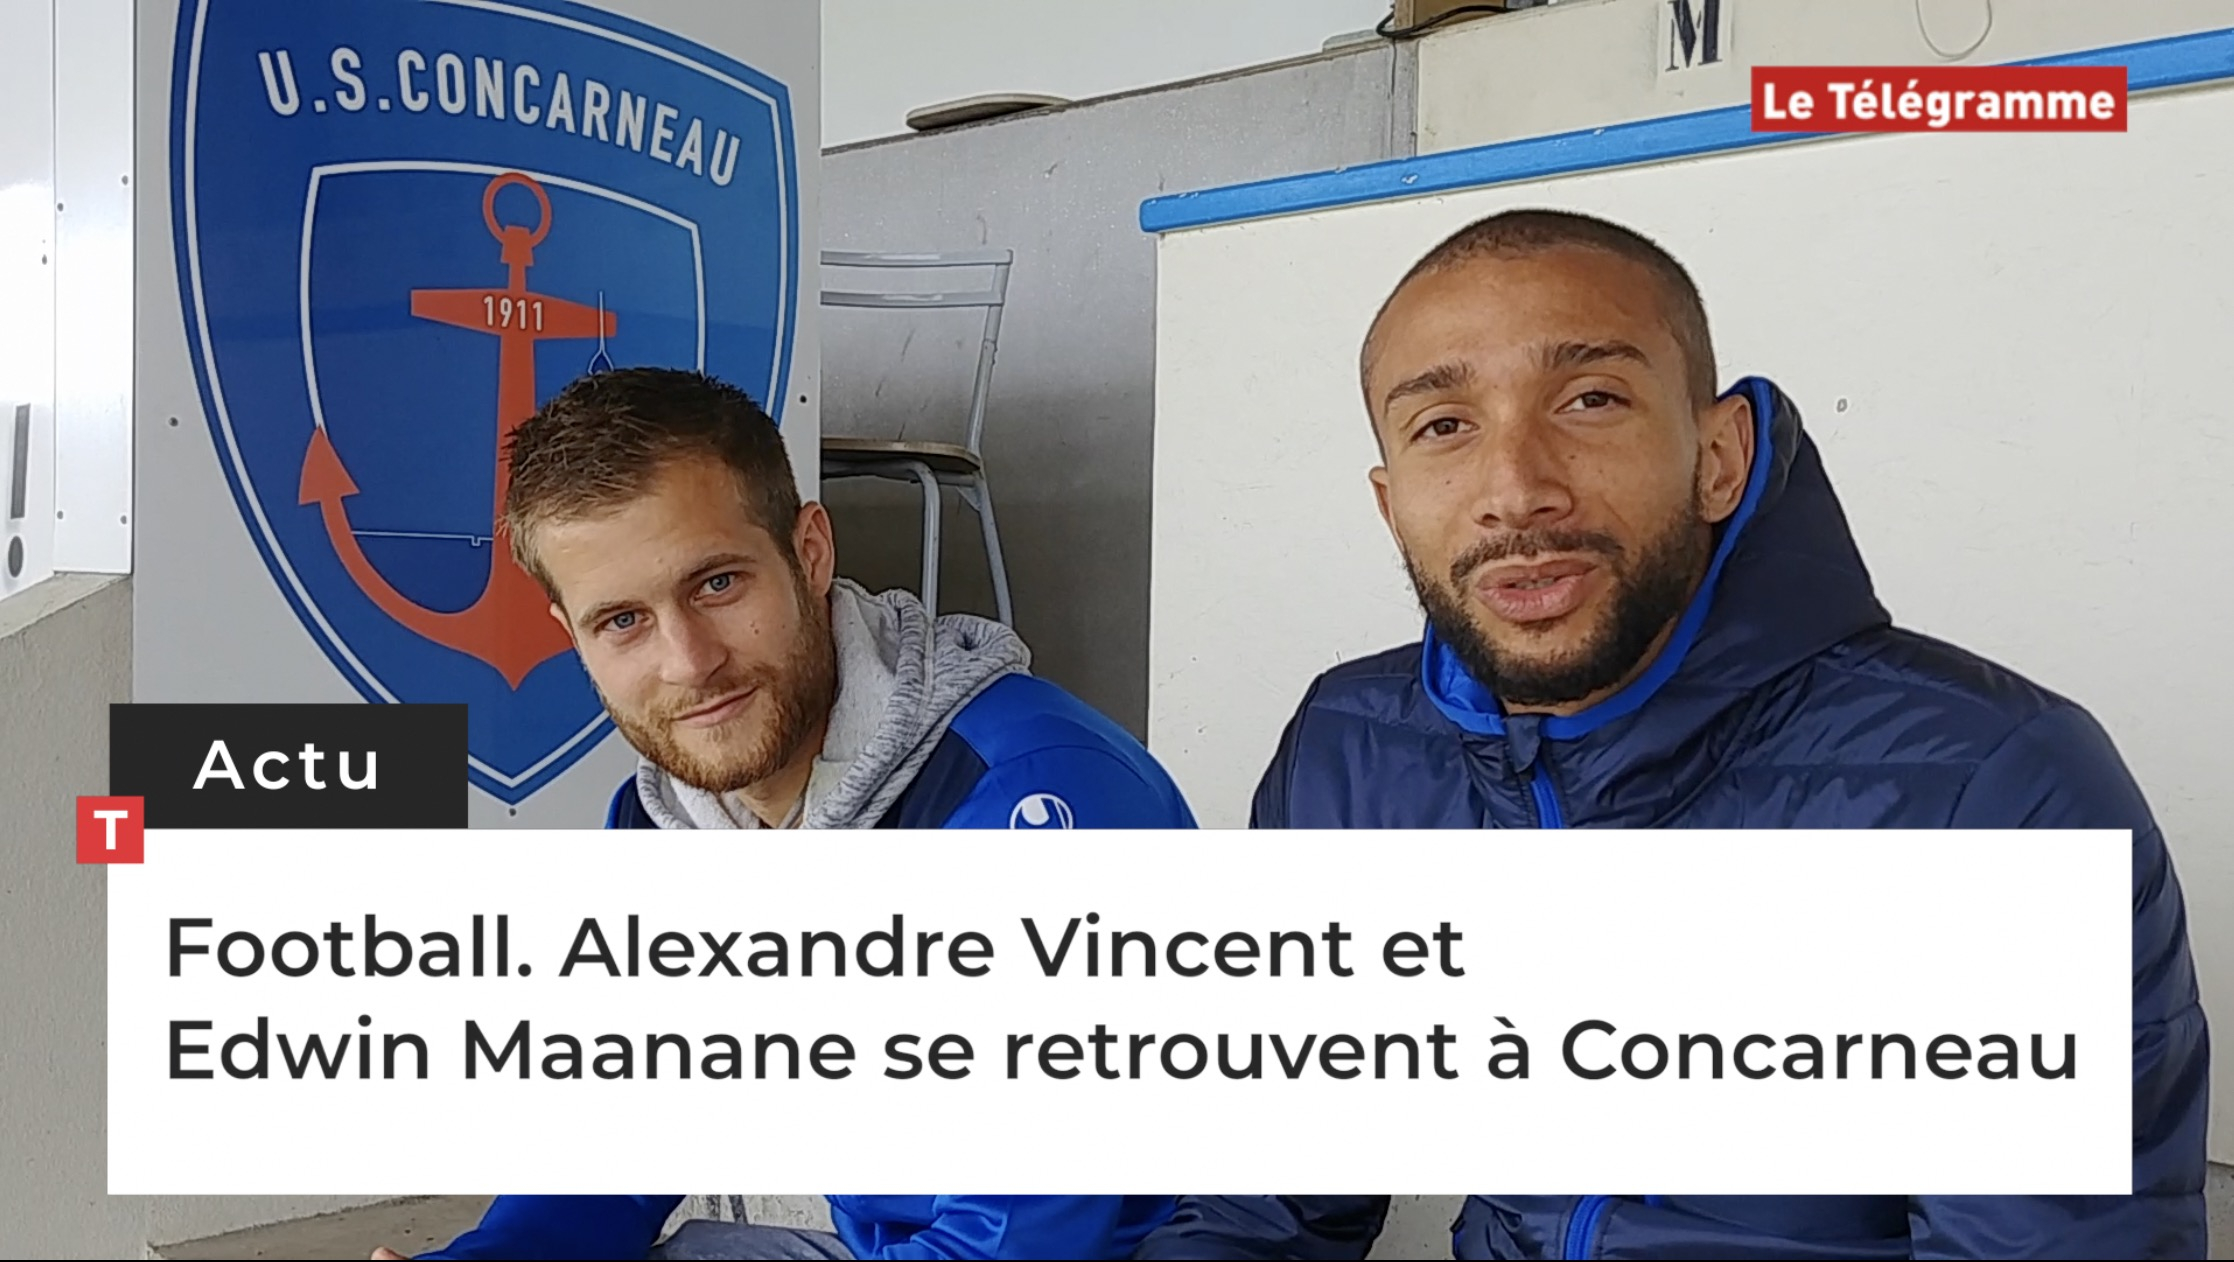 Football. Alexandre Vincent et Edwin Maanane se retrouvent à Concarneau  (Le Télégramme)